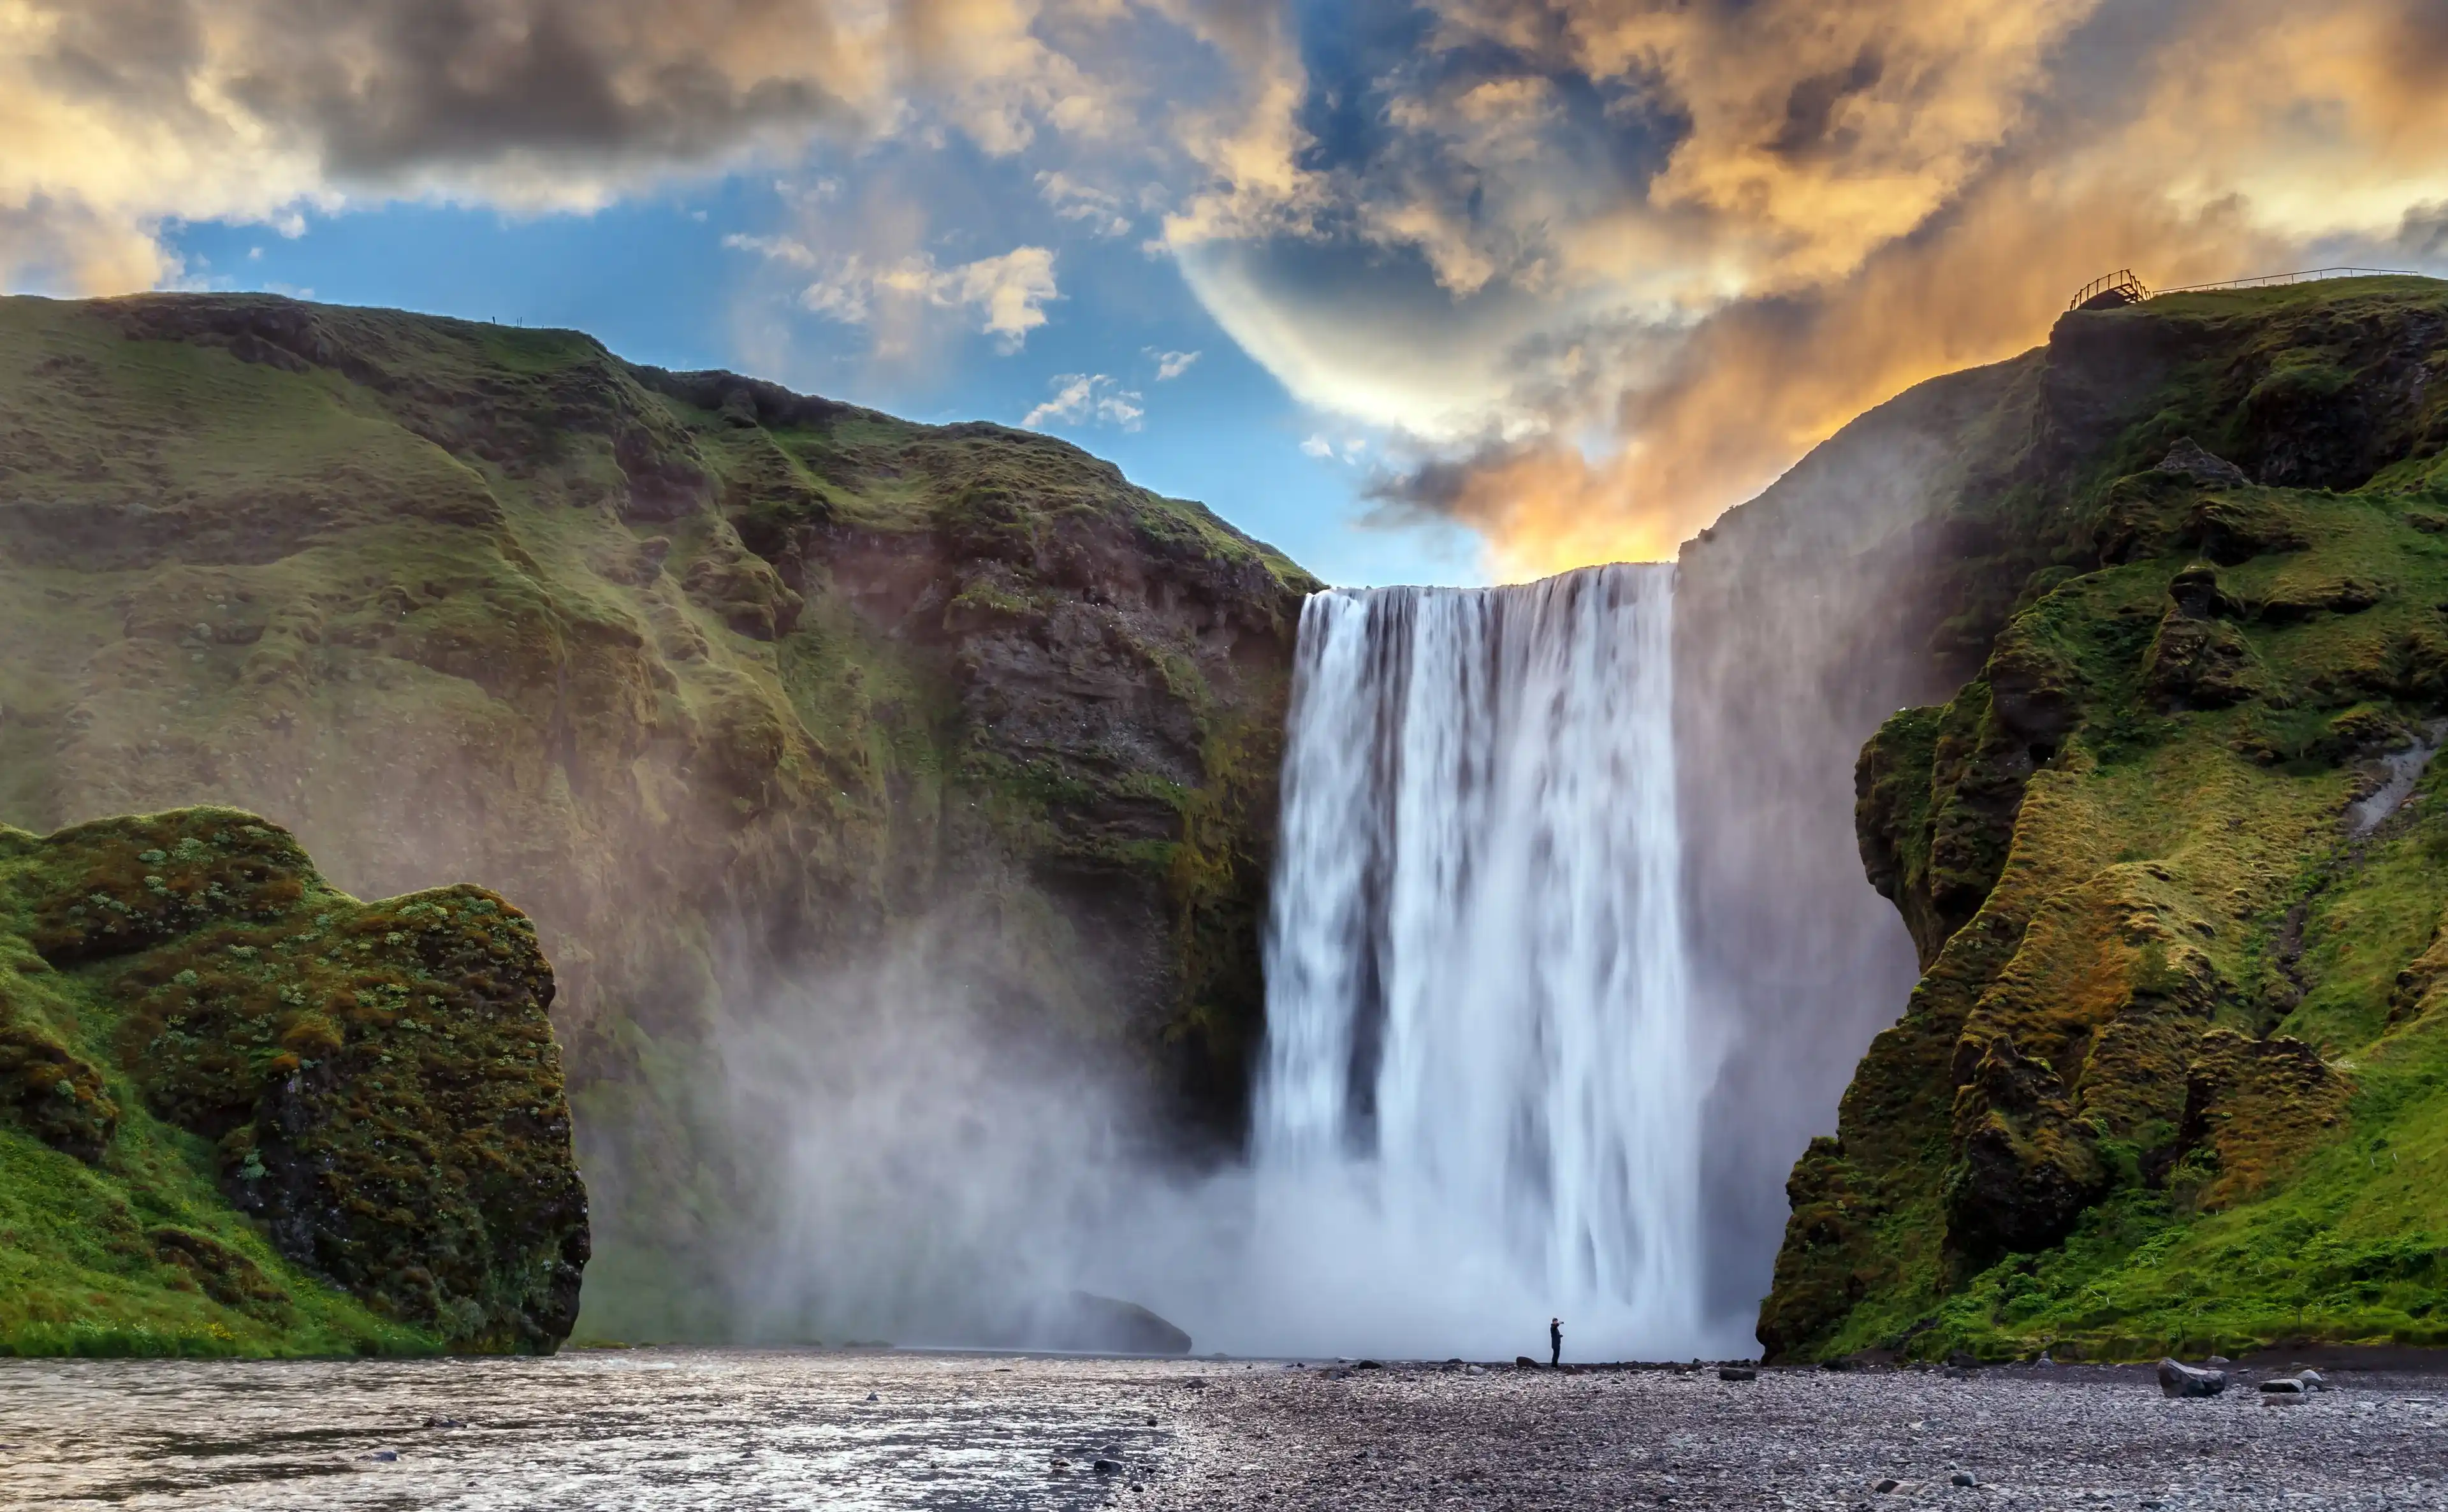 Величественная природа Исландии. Впечатляющий вид на водопад Скогафосс с ярким небом, светящимся солнечным светом во время восхода солнца. Skogafoss самое известное место Исландии. творческий художественный образ. открытка